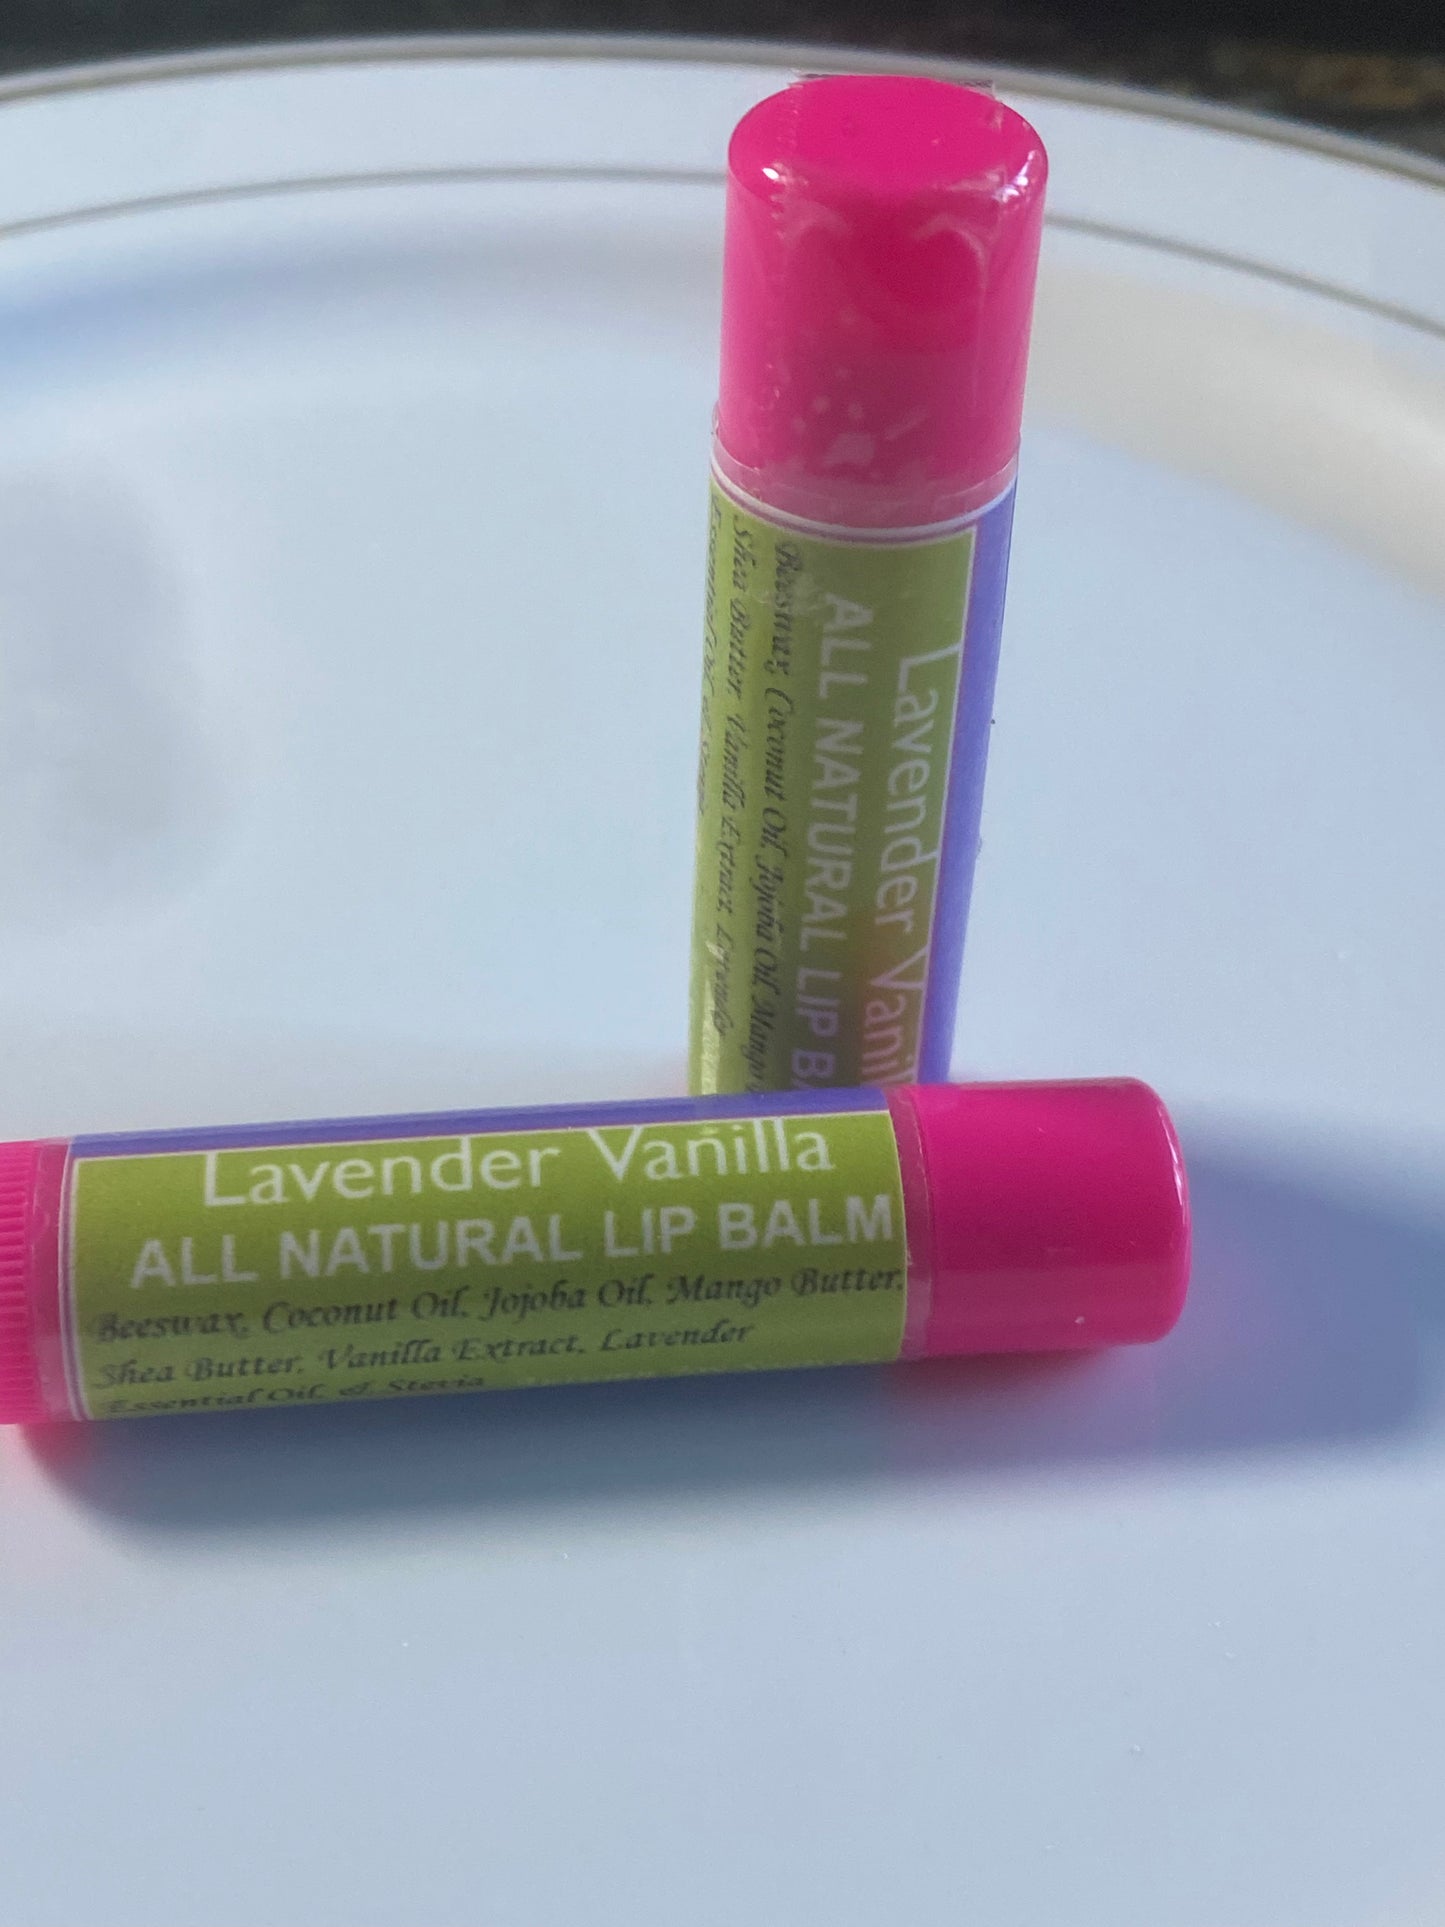 Lavender Vanilla Lip Balm